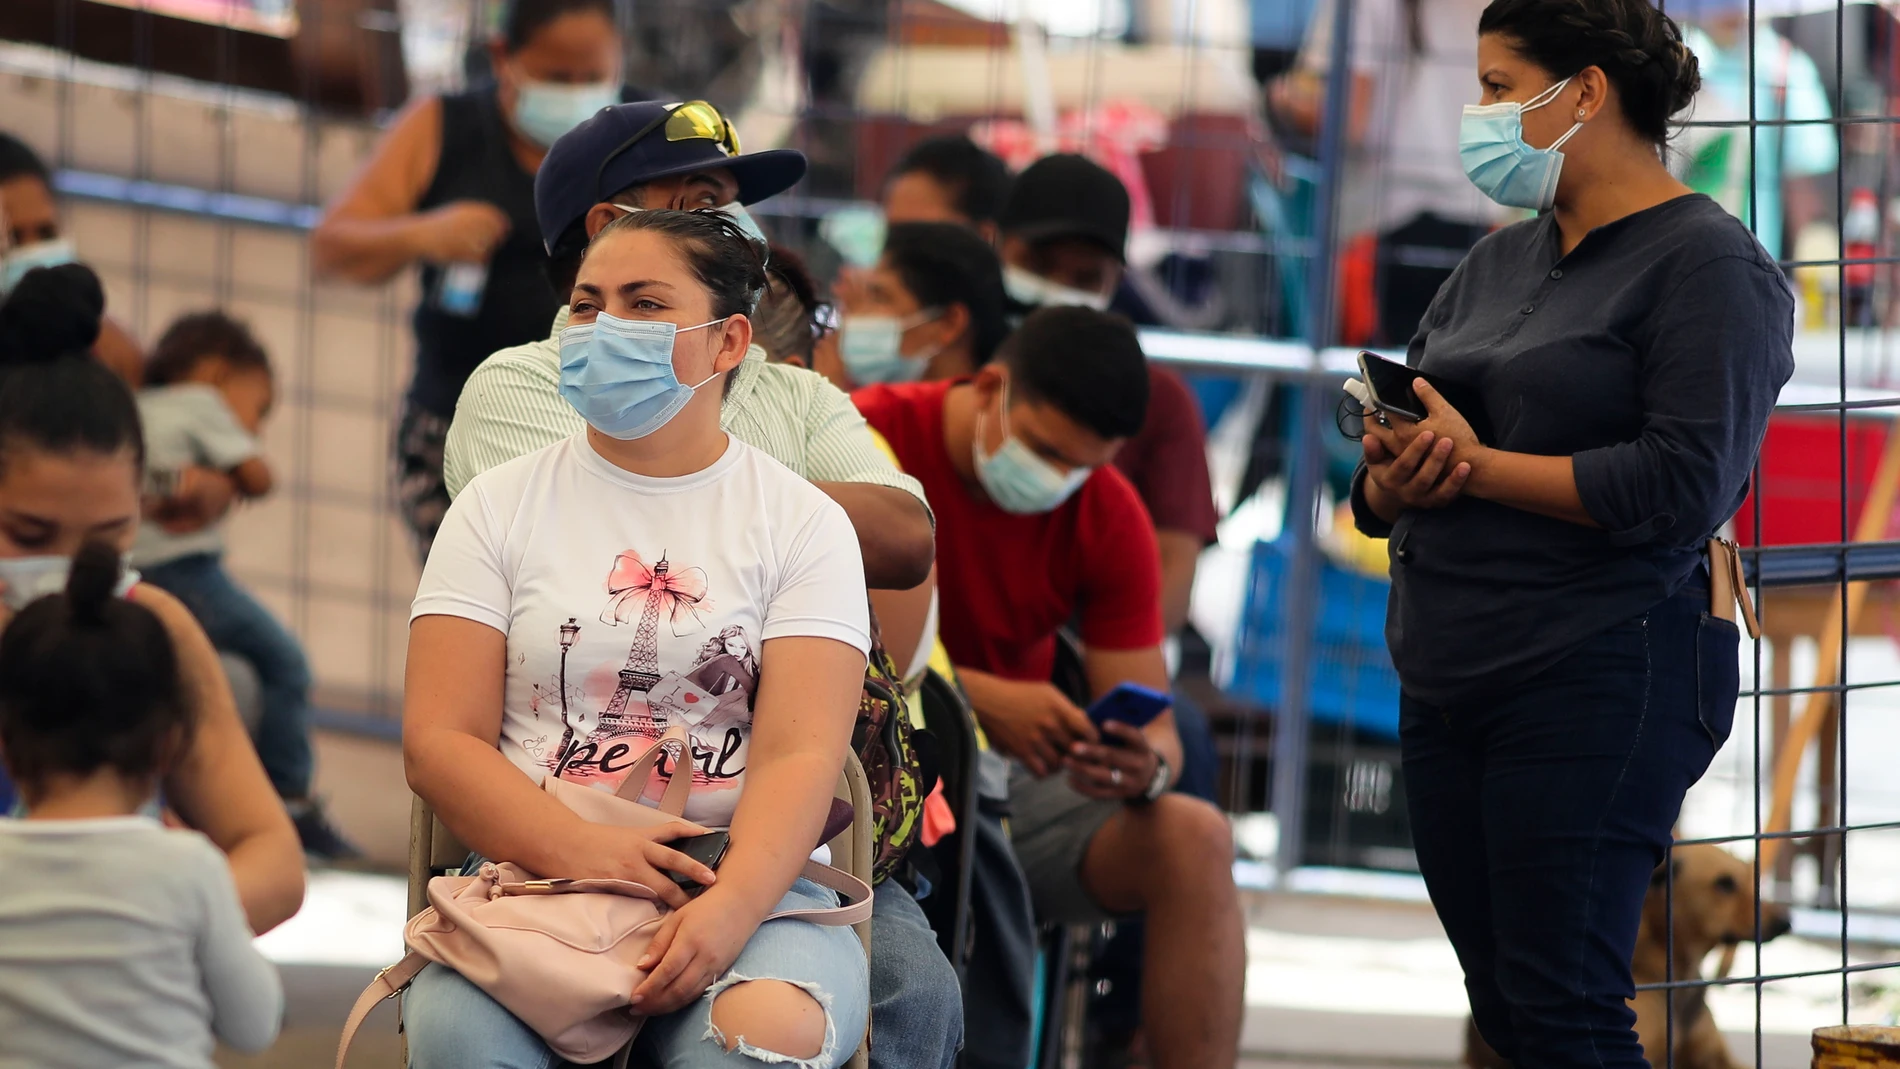 TEG01. TEGUCIGALPA (HONDURAS), 27/08/2021.- Ciudadanos esperan para realizarse una prueba de detección de coronavirus, el 25 de agosto de 2021, en un Centro de Triaje y Estabilizacion de Tegucigalpa (Honduras). Con el 97 % de ocupación hospitalaria a causa de la covid-19, Guatemala es actualmente el país más afectado por la pandemia en Centroamérica, donde el proceso de vacunación avanza a dos tiempos con El Salvador, Panamá y Costa Rica a la cabeza. EFE/ Gustavo Amador